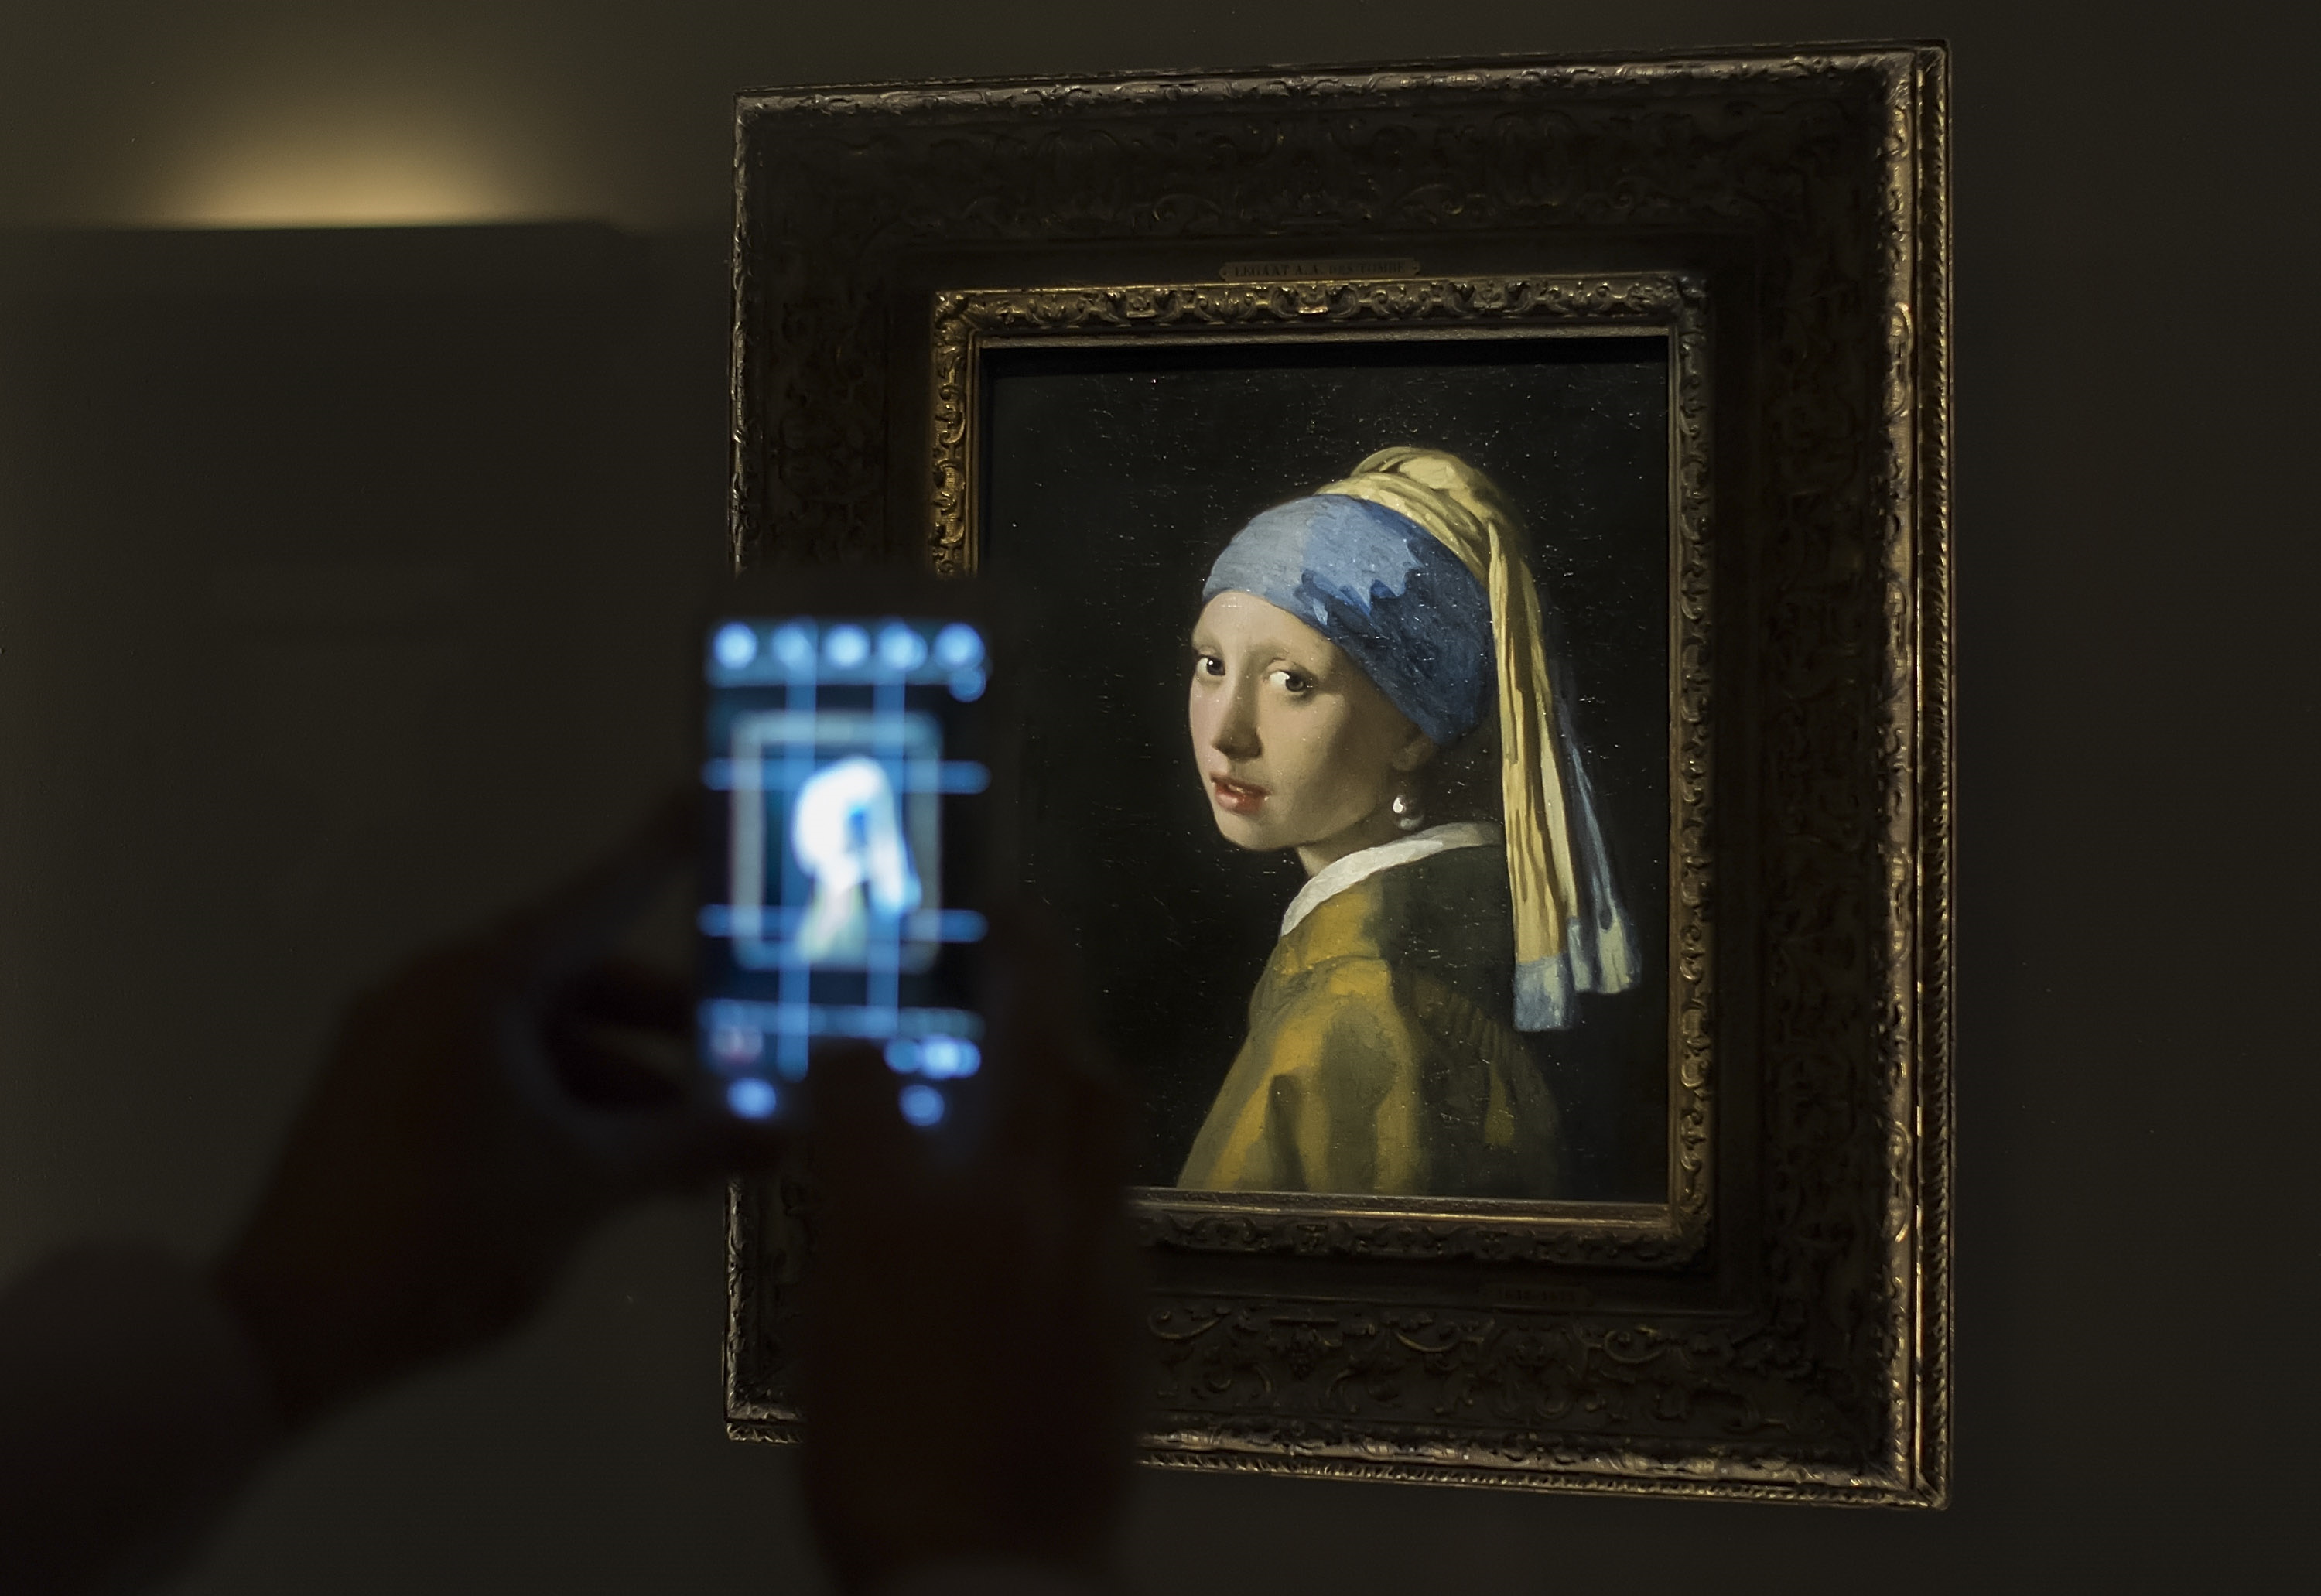 <p>&bdquo;Момичето с перлената обица&ldquo;</p>

<p>Този интригуващ фаворит, дело на холандския художник Йоханес Вермеер ван Делфт, често се сравнява с &bdquo;Мона Лиза&ldquo;. Това обаче не е портрет, а &bdquo;tronie&rdquo; &ndash; холандска дума за картина на въображаема фигура с преувеличени черти. Шедьовърът е блестящ в своята простота.</p>